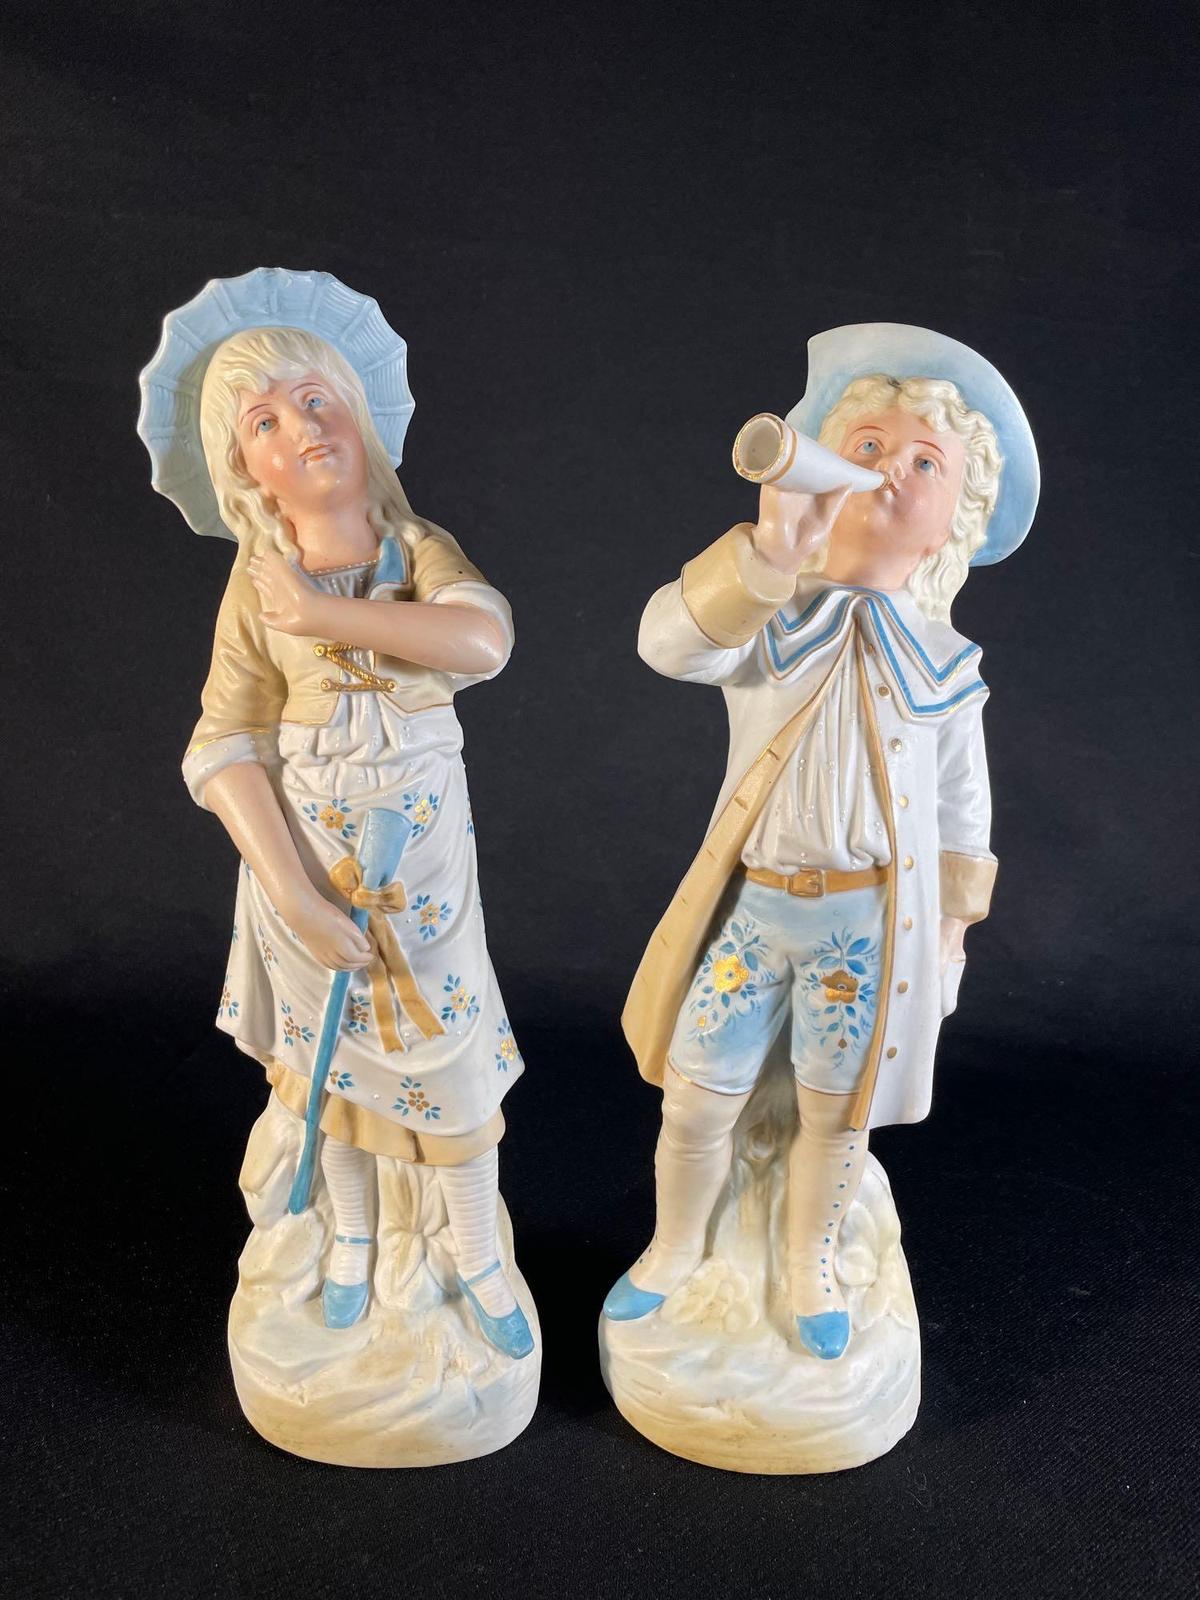 Pair of 12-1/2" antique bisque style ceramic figurines -see photo's-